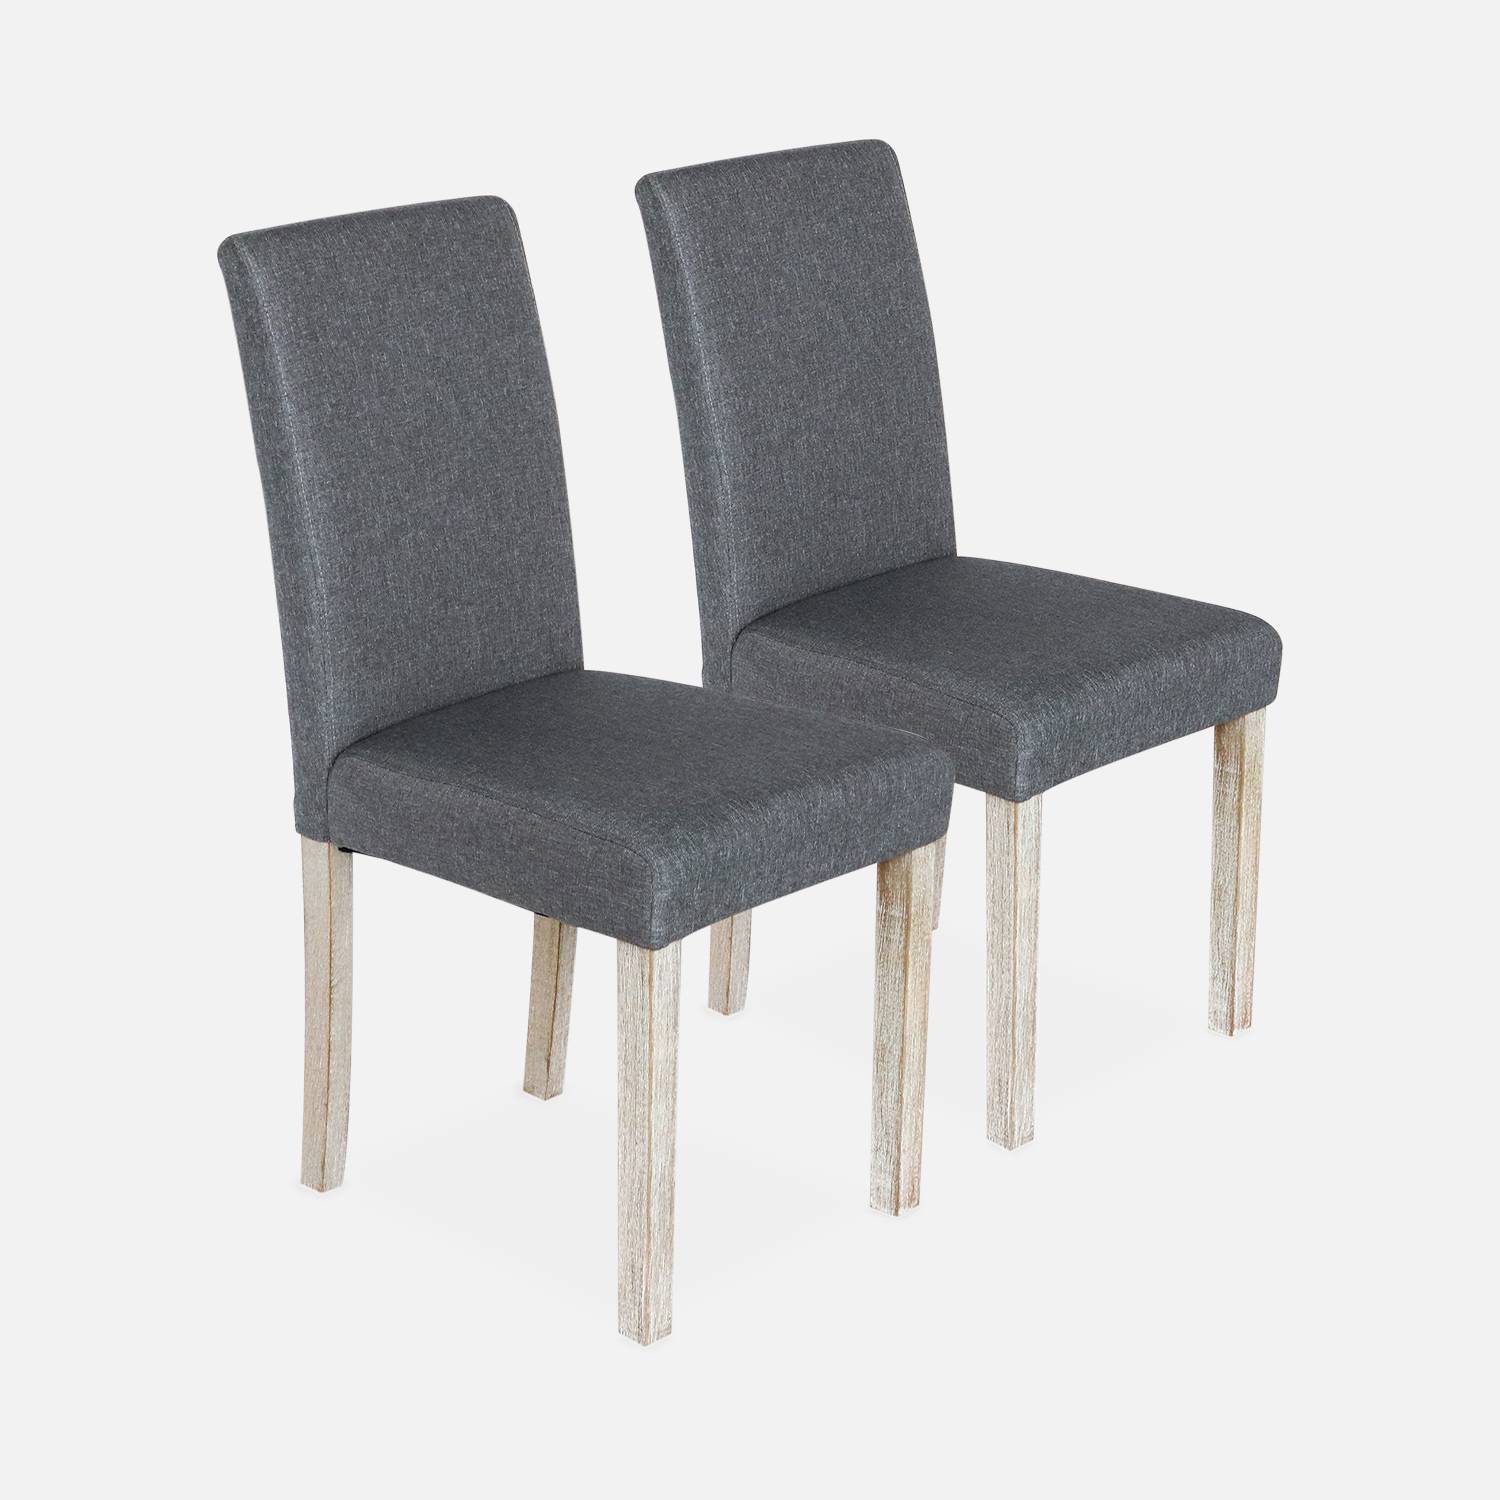 Lote de 2 sillas - Rita - sillas de tela, patas madera lacada  Photo3